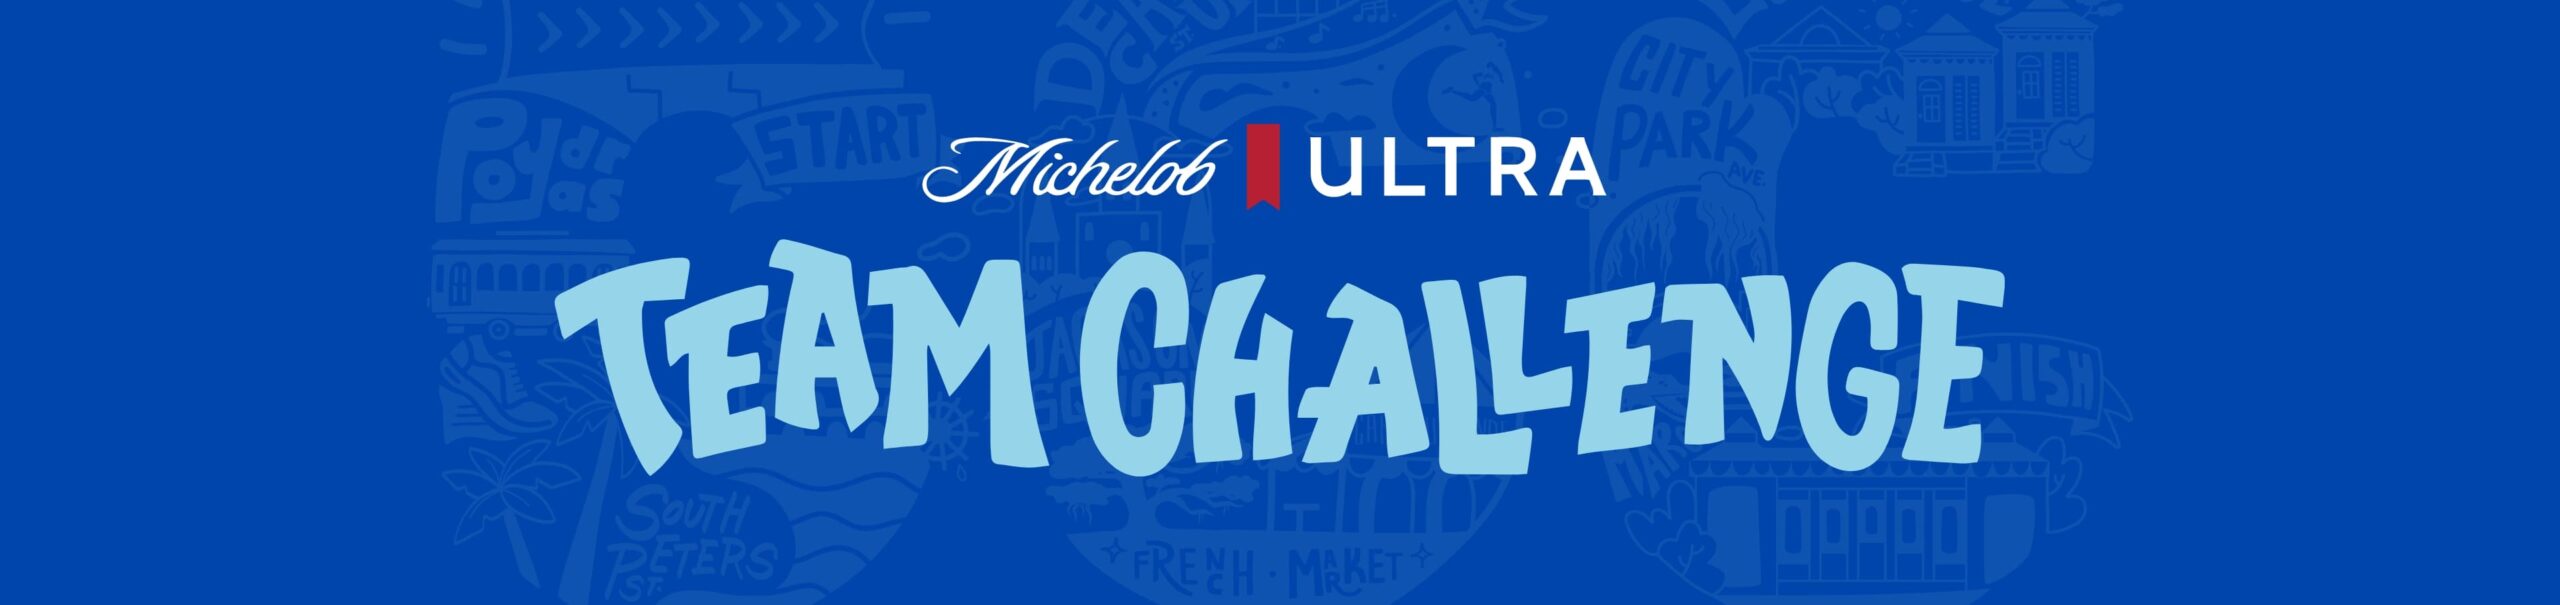 Michelob ULTRA Team Challenge